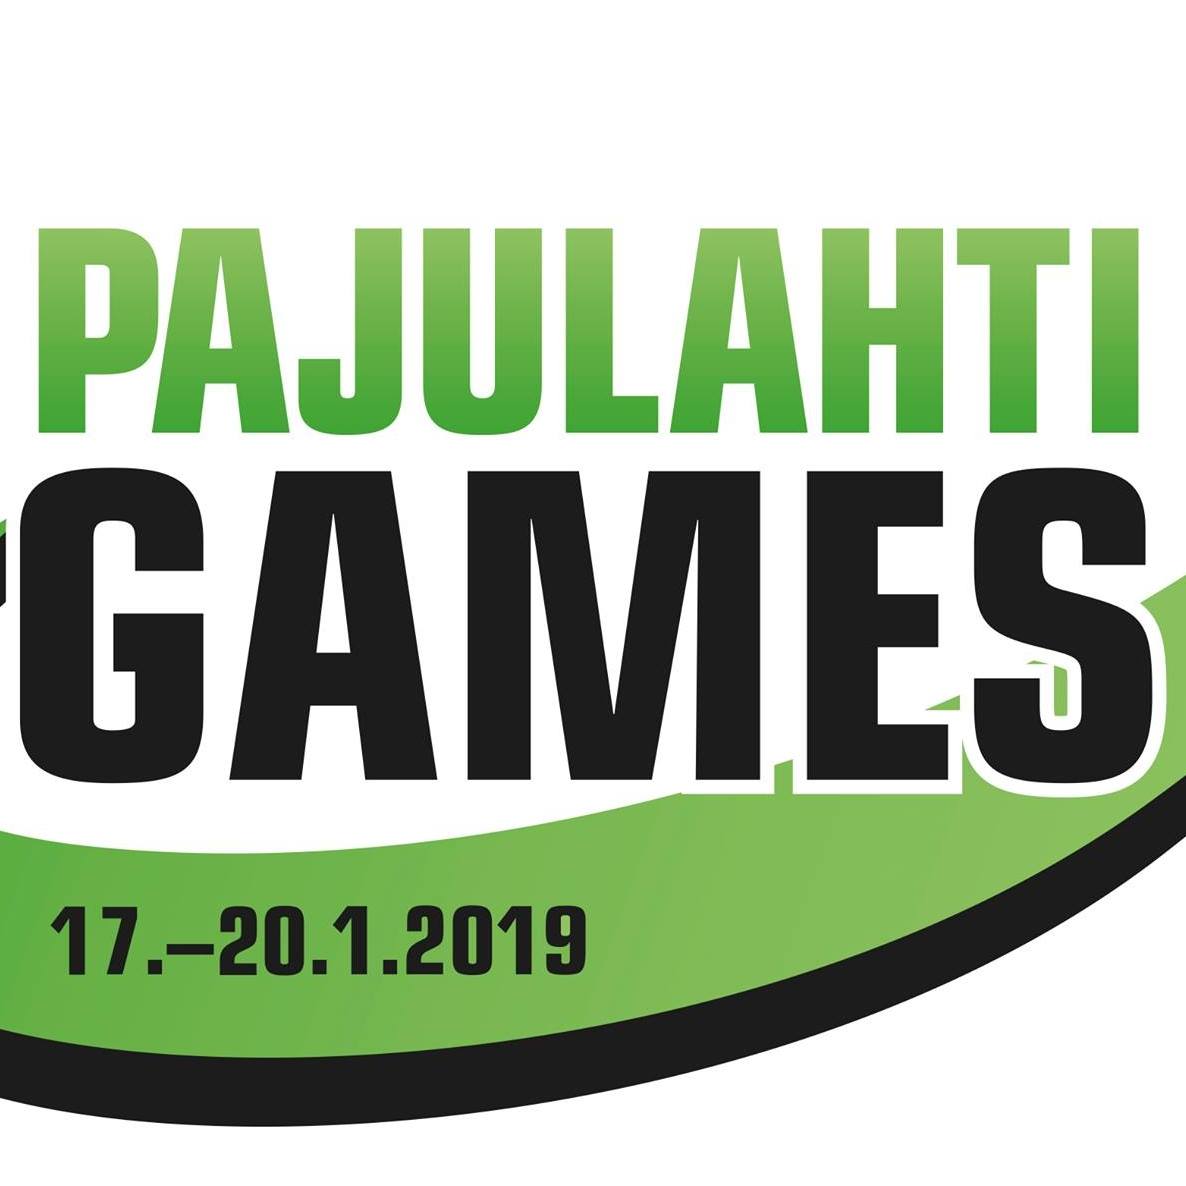 Сборные команды России по голболу спорта слепых и волейболу сидя примут участие в традиционных соревнованиях Pajulahti Games в Финляндии